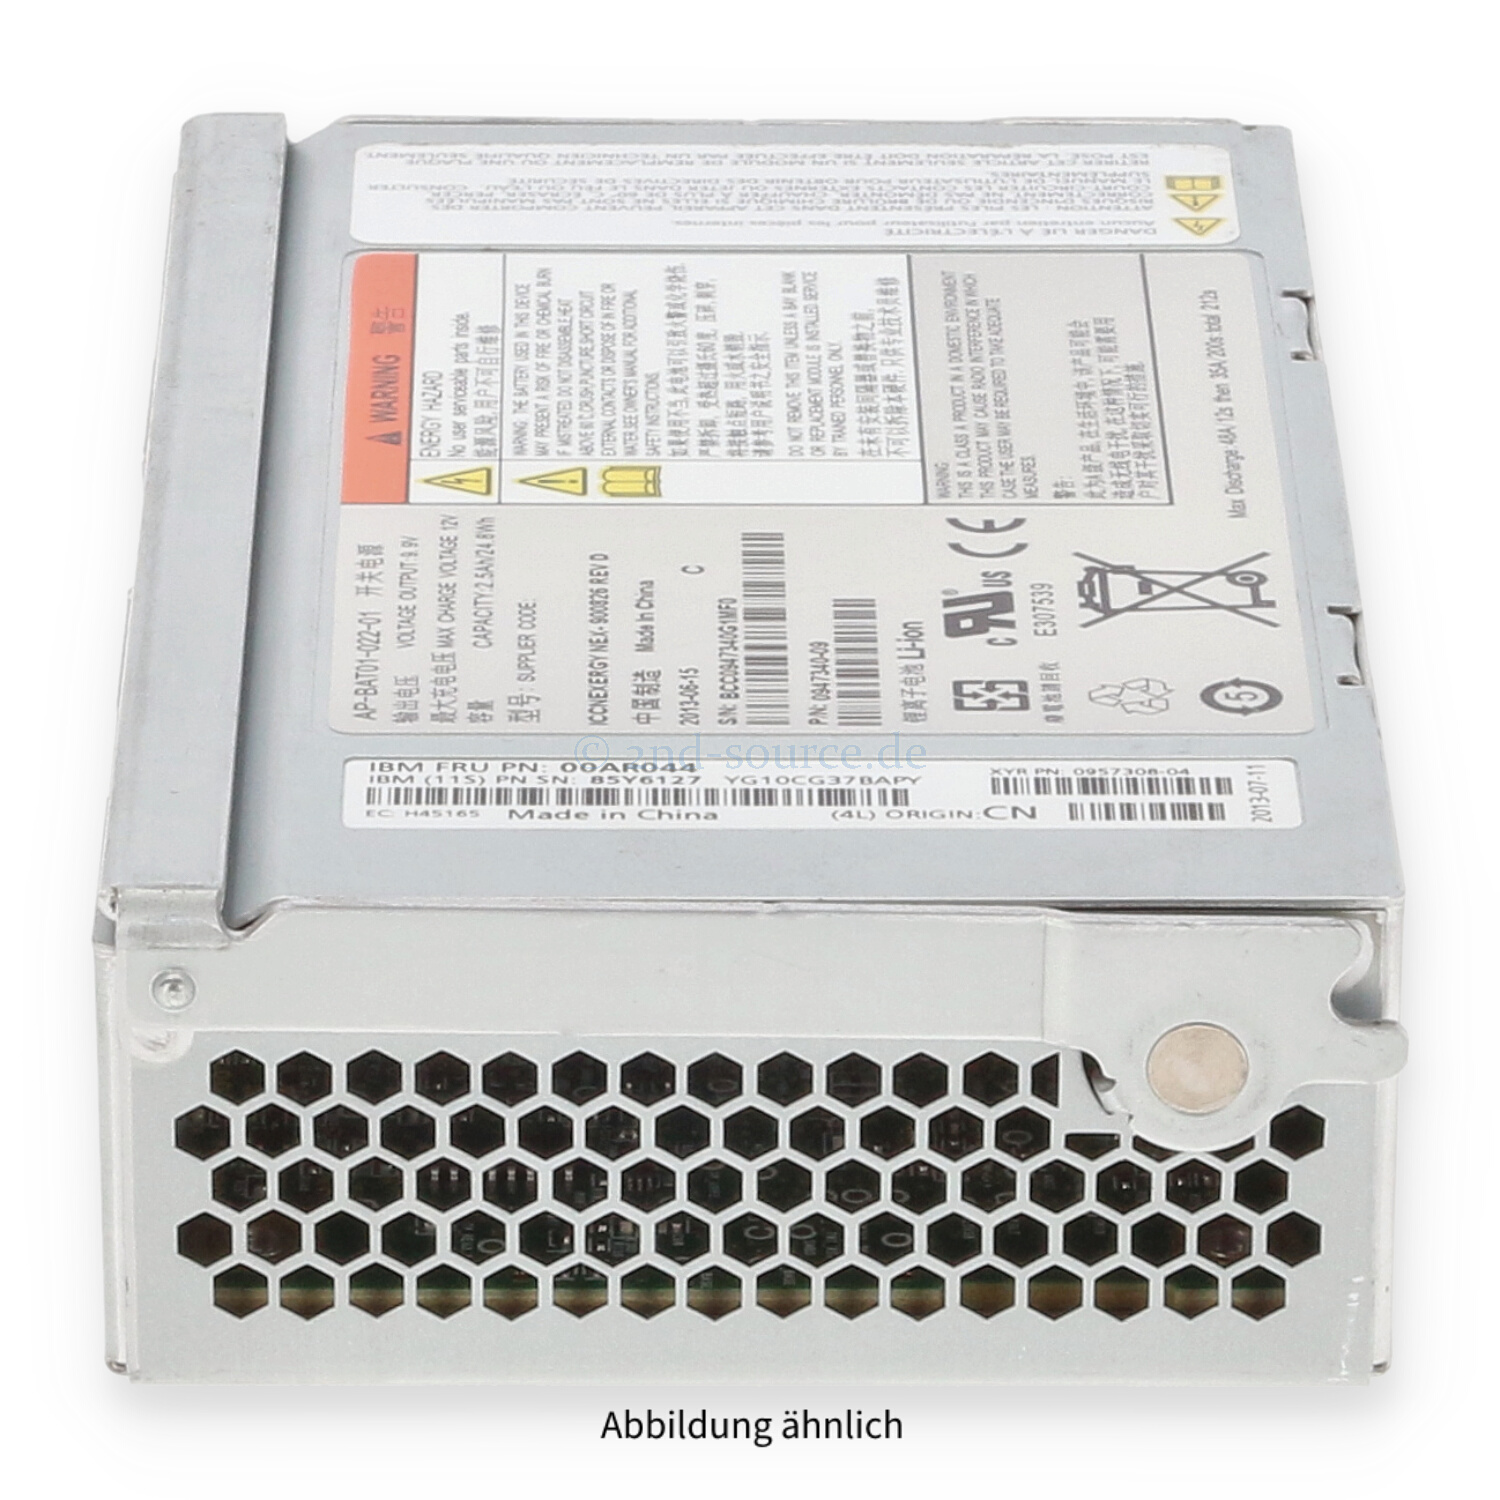 IBM Controller Backup Battery Unit V7000 00AR044 85Y6127